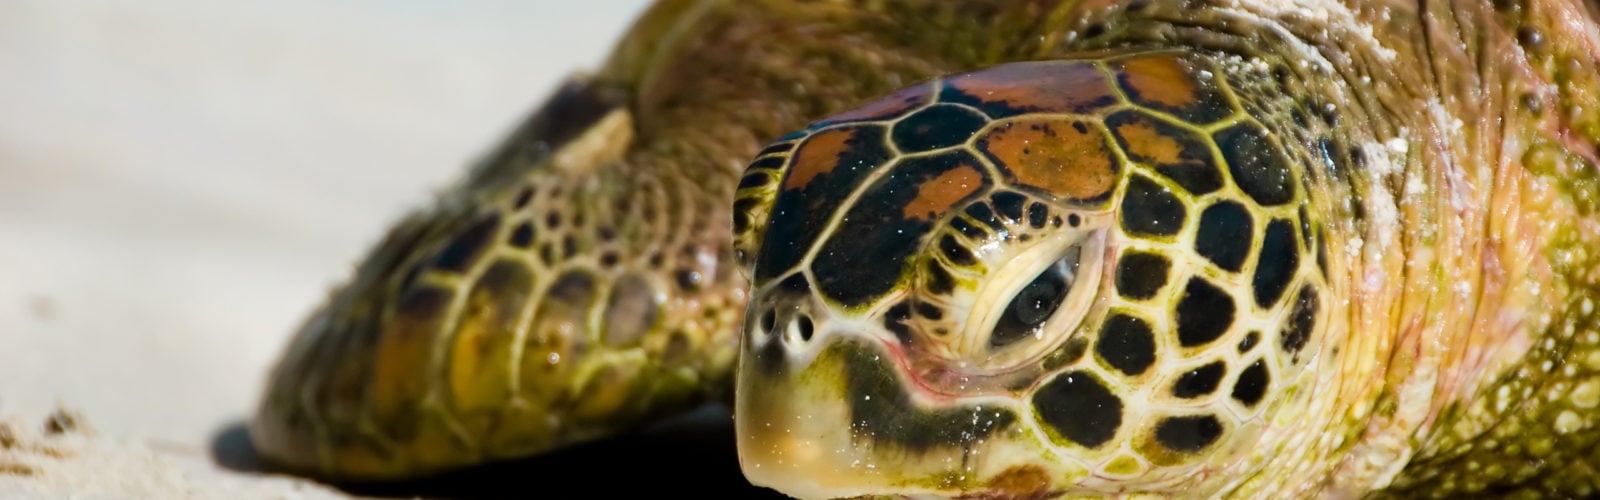 french-polynesia-turtles